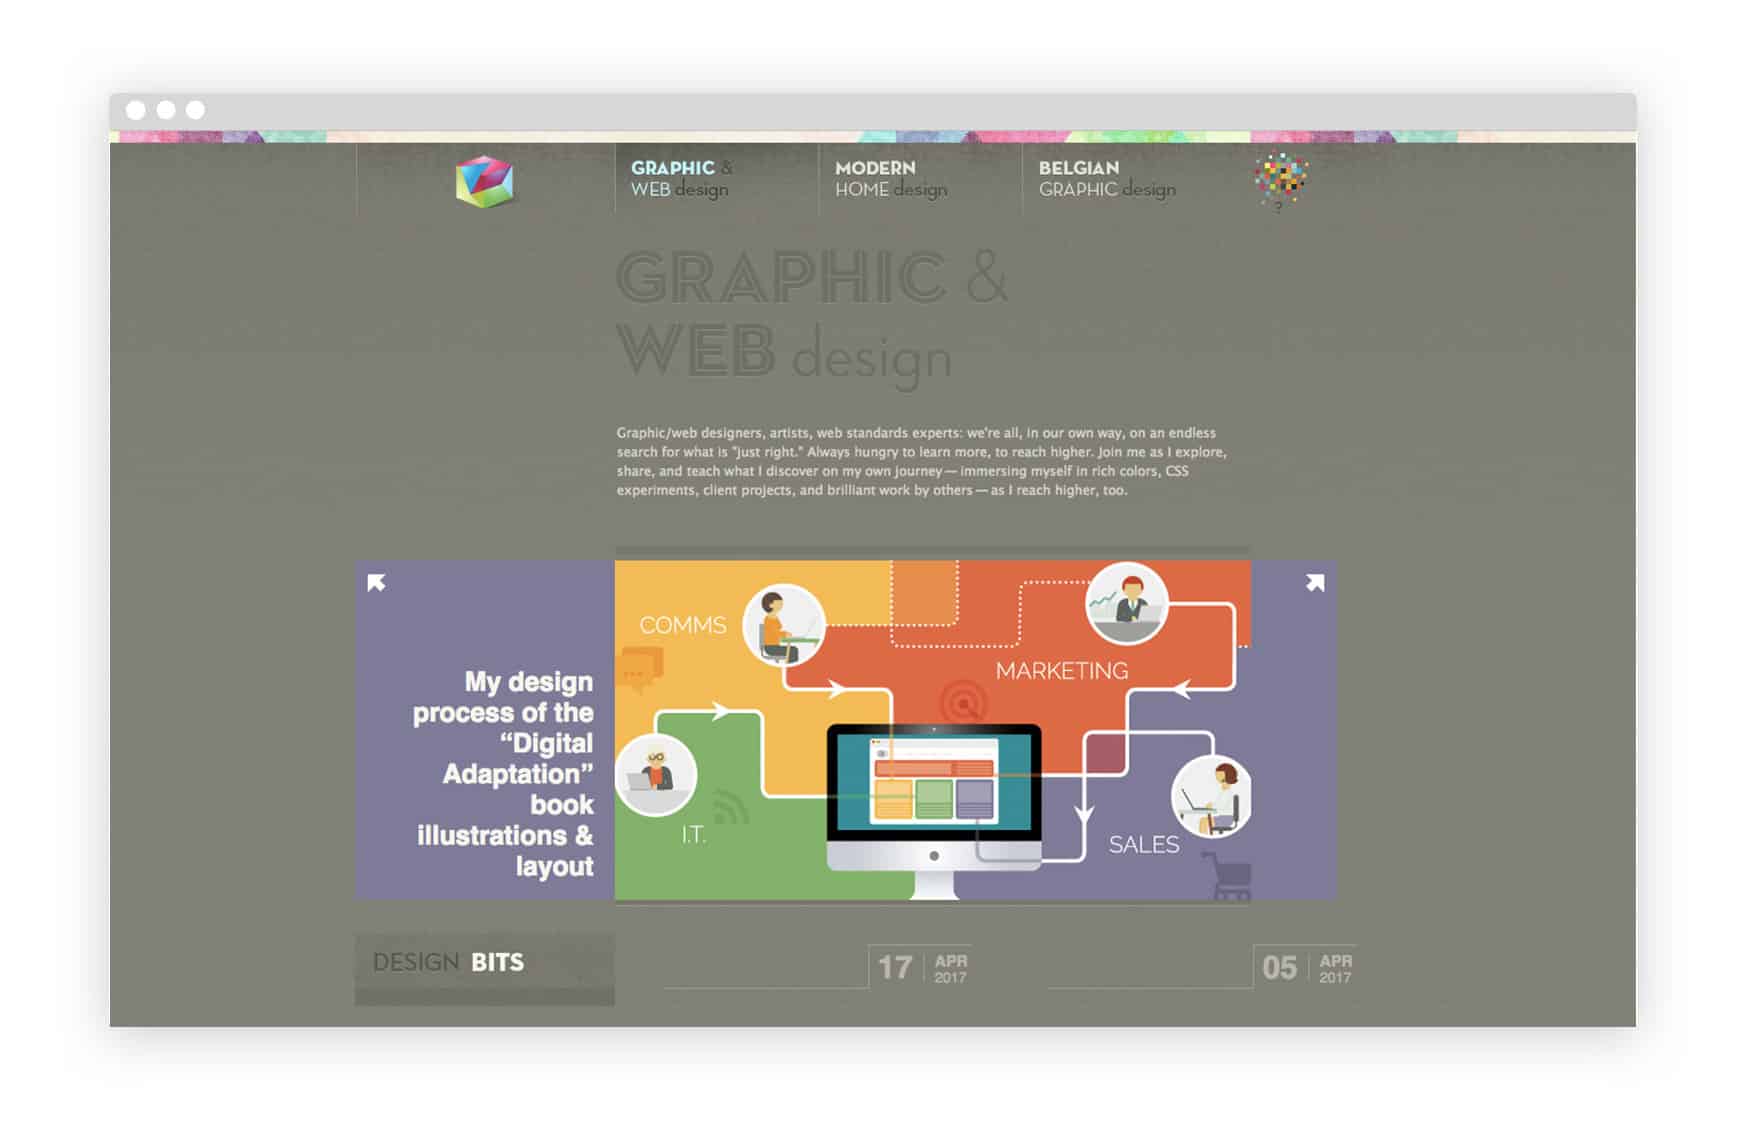 veerles-graphic-design-blog cursos gratuitos de diseño gráfico